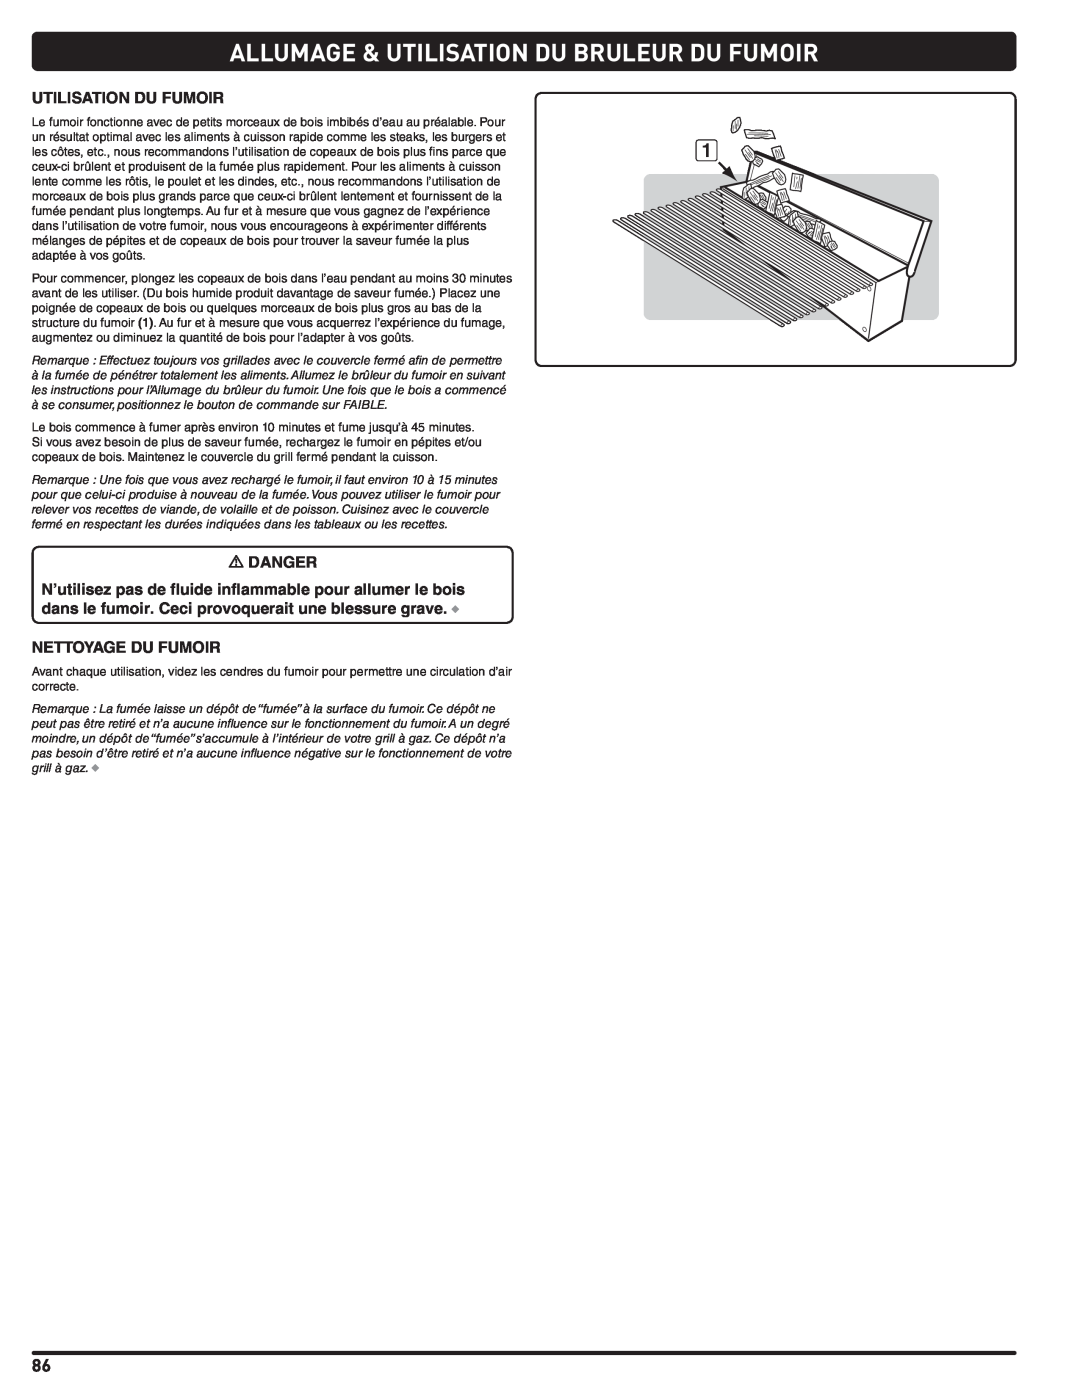 Weber 56576 manual Allumage & Utilisation Du Bruleur Du Fumoir, à se consumer, positionnez le bouton de commande sur FAIBLE 